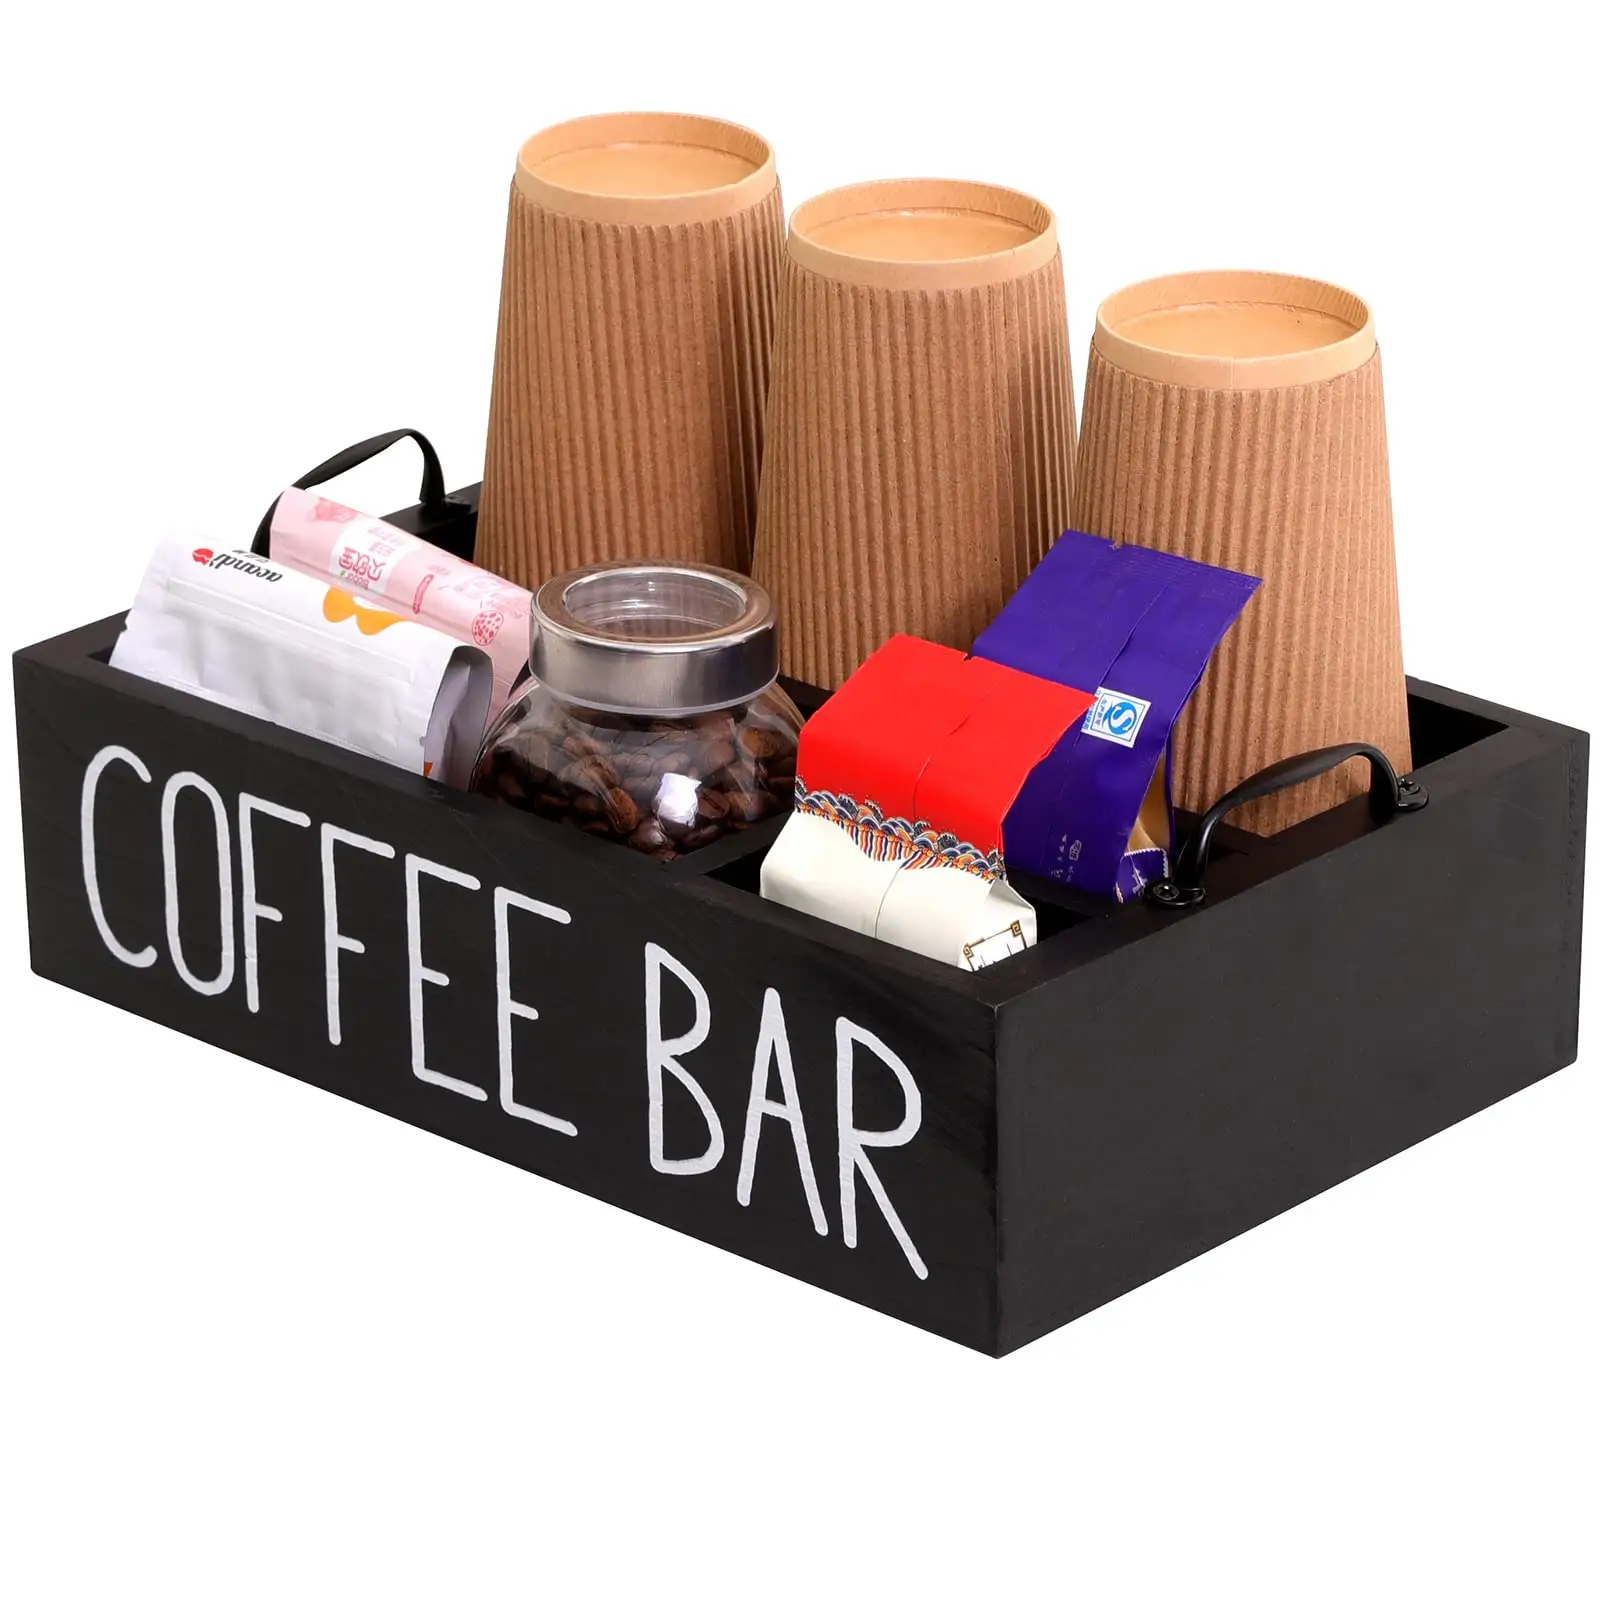 Estante de almacenamiento para Estación de café, accesorios de barra de café de madera, estante de almacenamiento para granja, soporte para cápsulas de café Kcup, cesta de almacenamiento